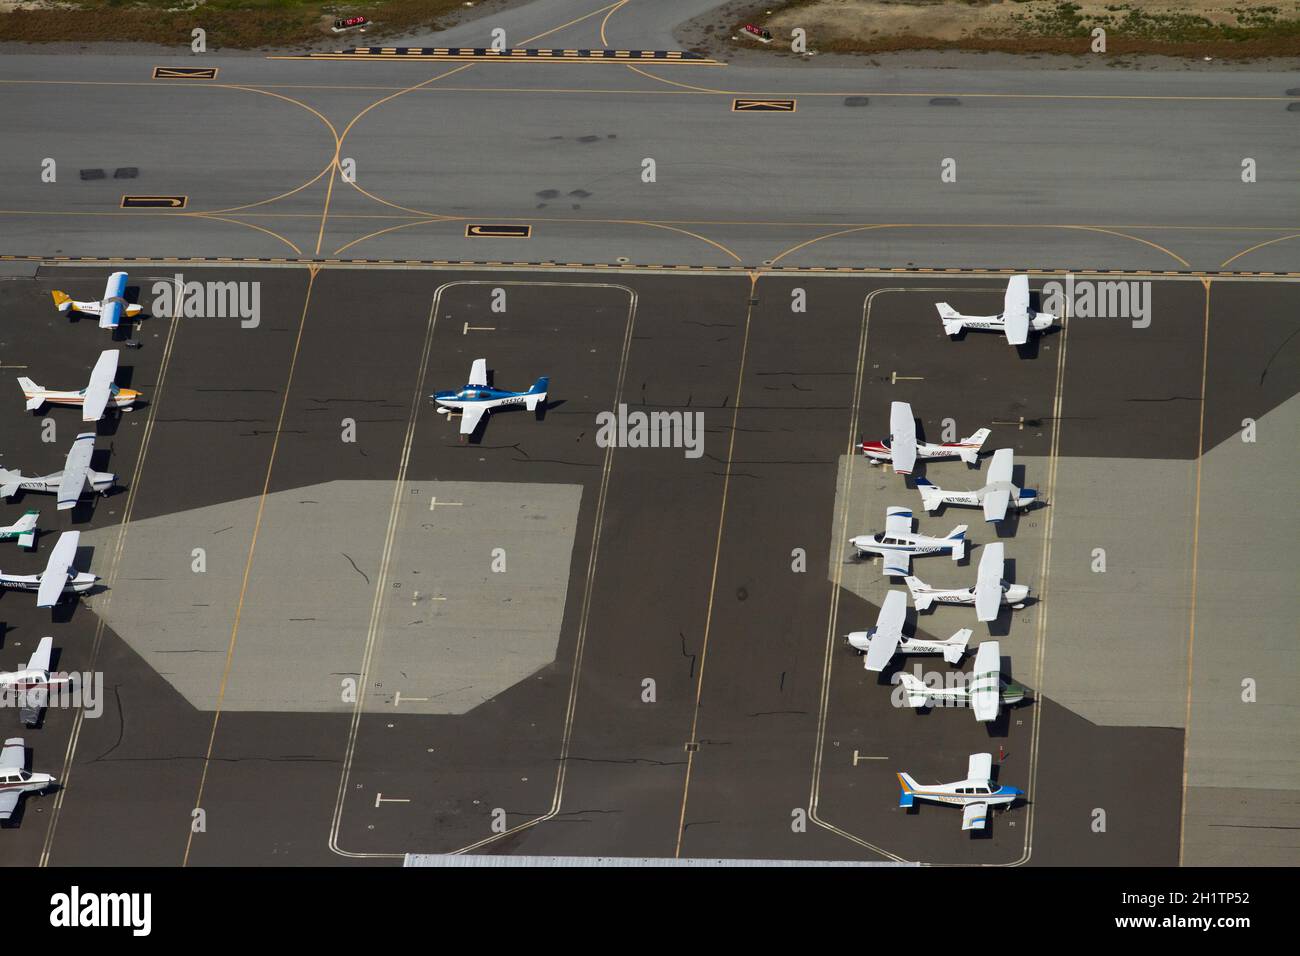 Les avions légers, garée à l'aéroport de San Carlos, San Francisco, Californie, USA - vue aérienne Banque D'Images